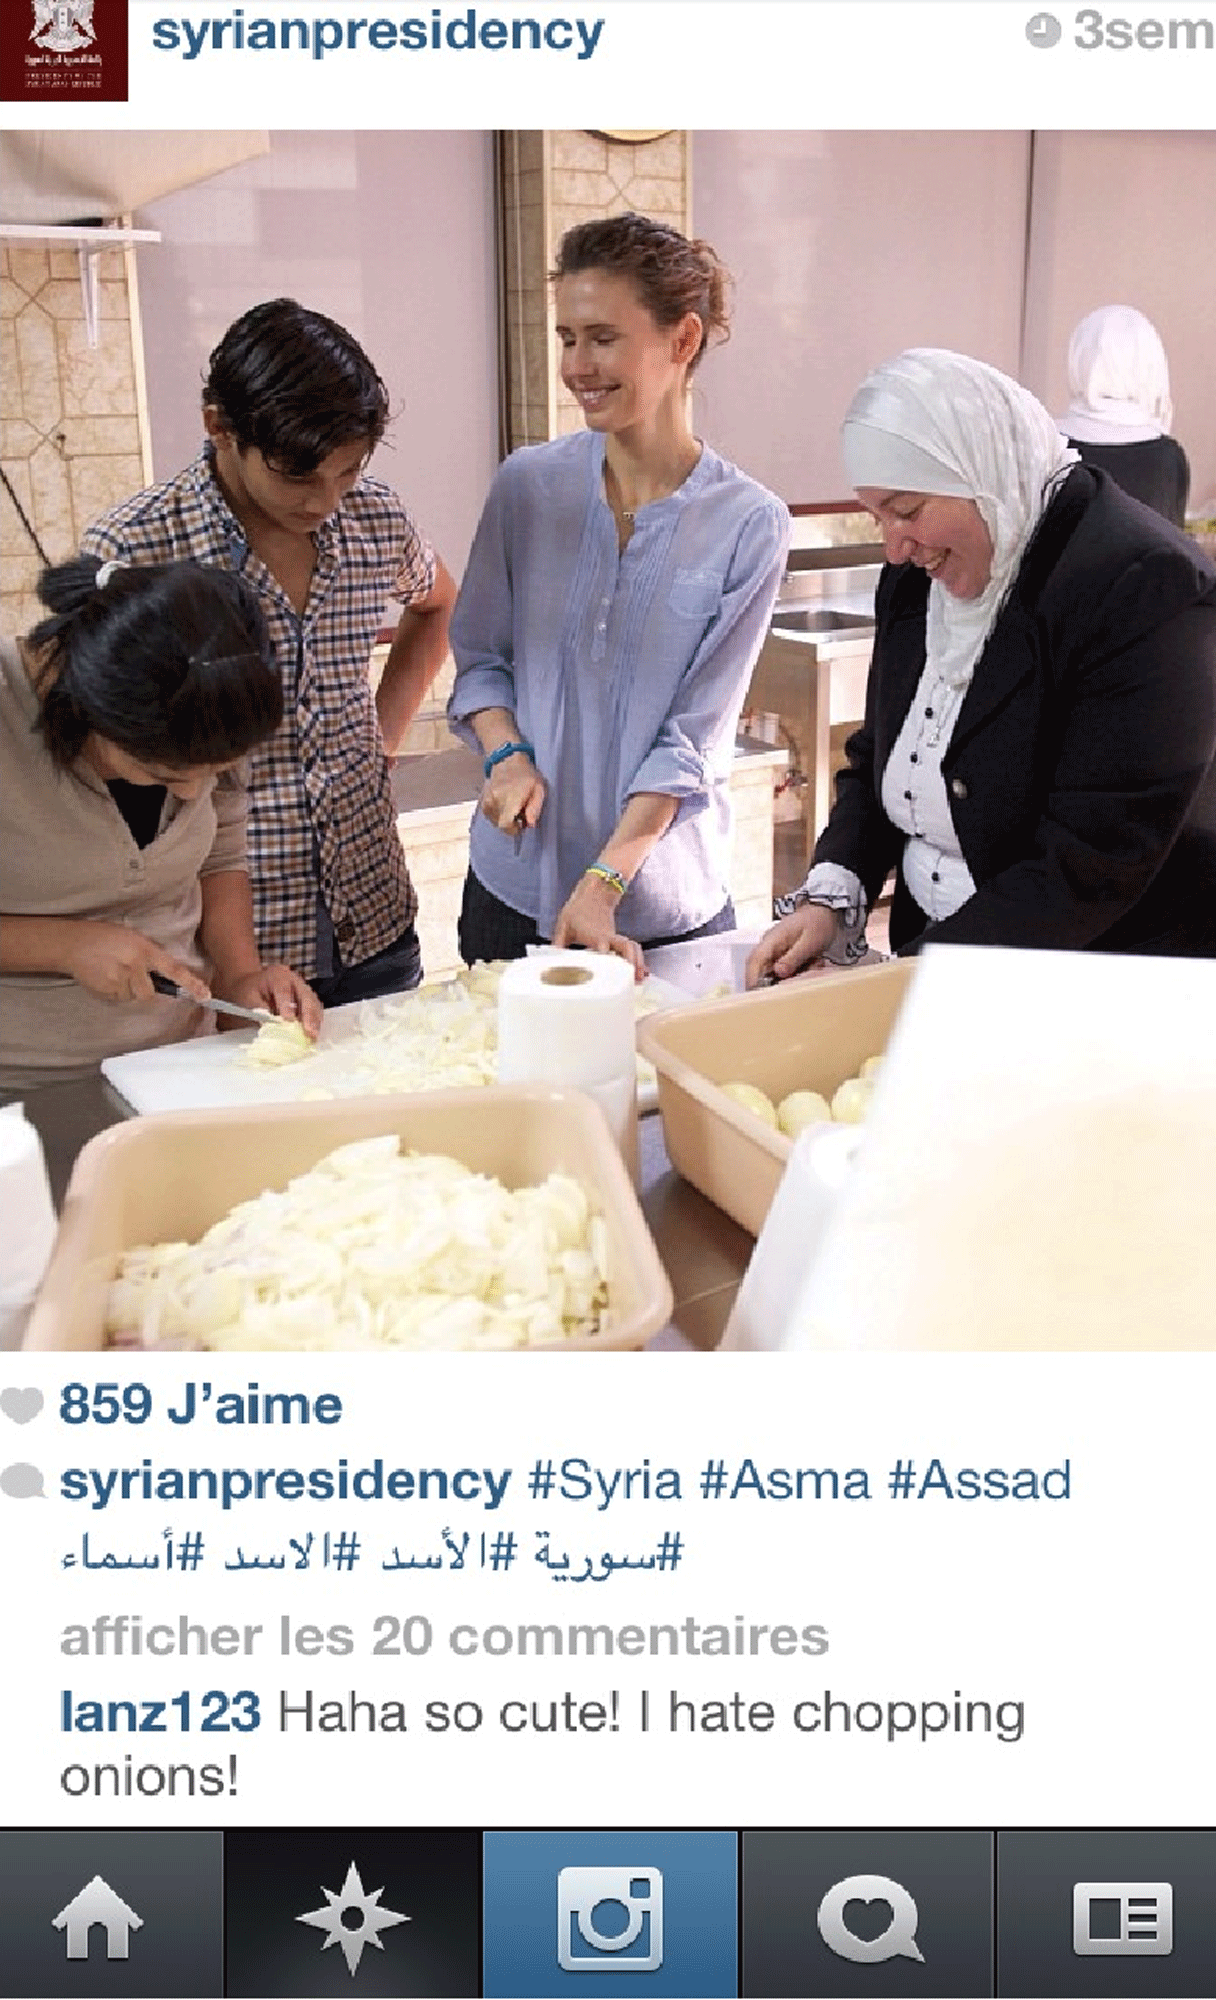 Asma, la première dame, coupe des oignons sur le compte instagram de Bachar al-Assad. [instagram]